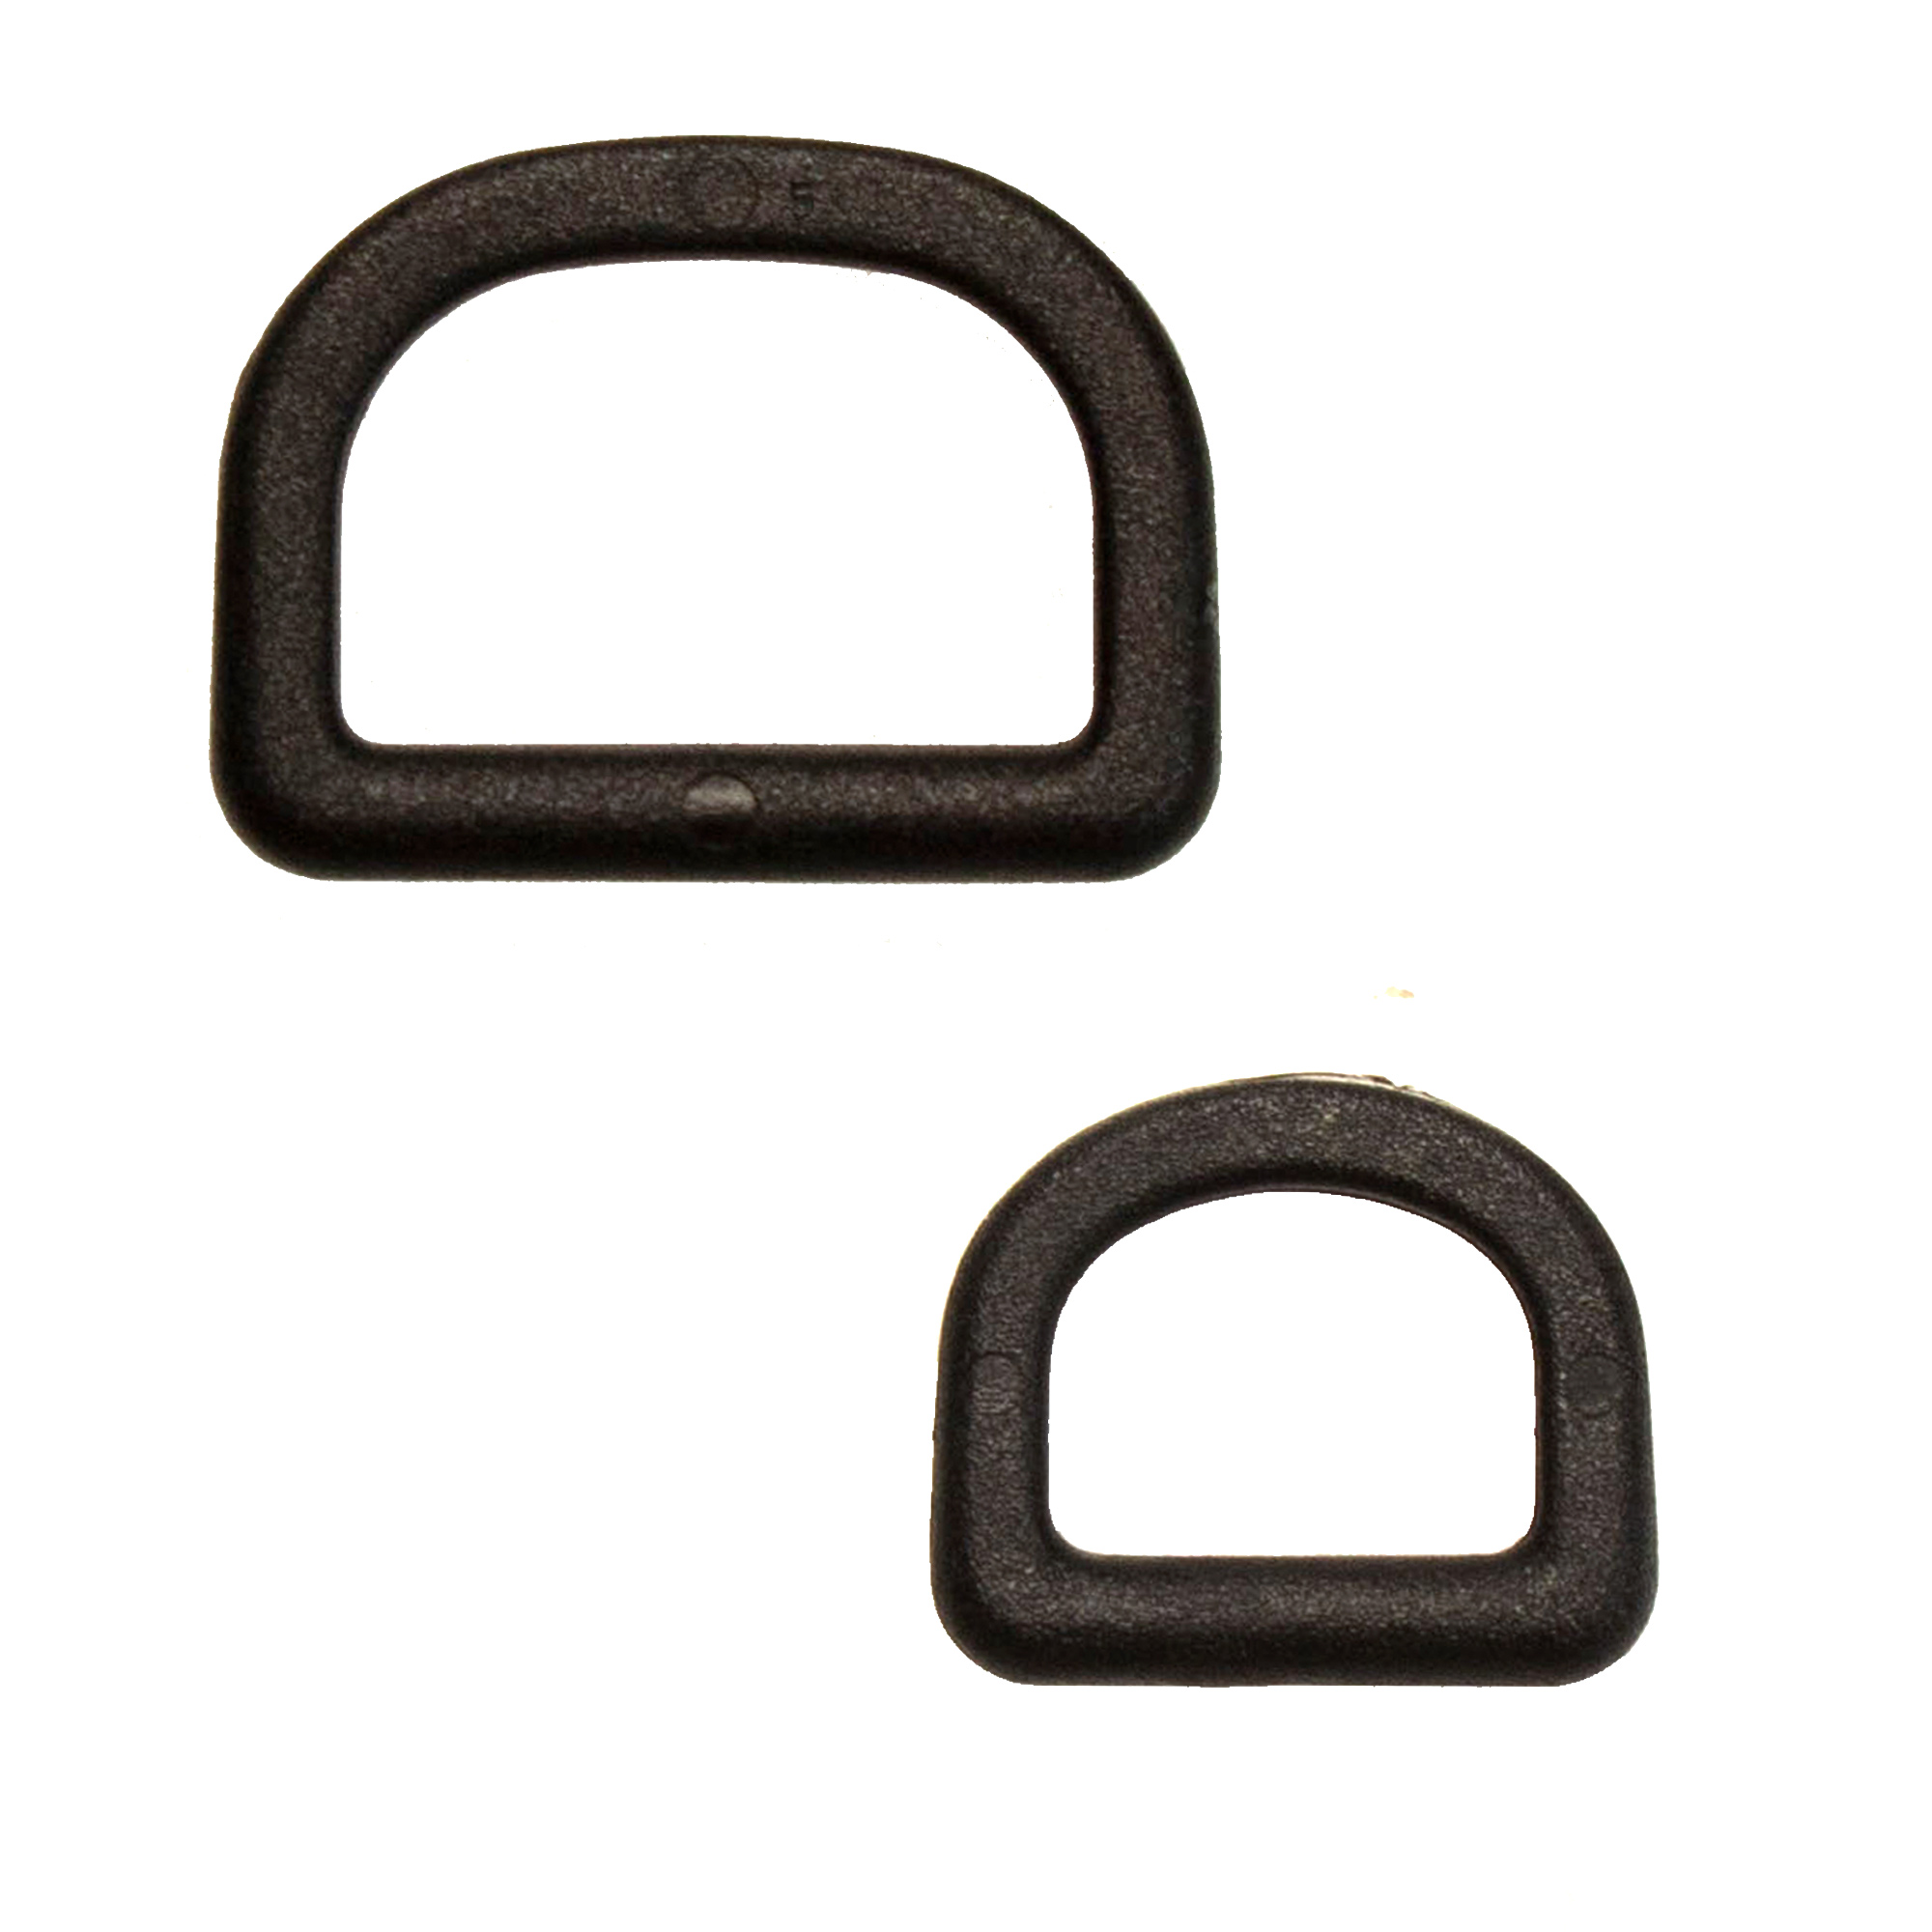 nortik/Triton adv. - D-Ring Kunststoff klein mit rundem Patch, 2,50 €